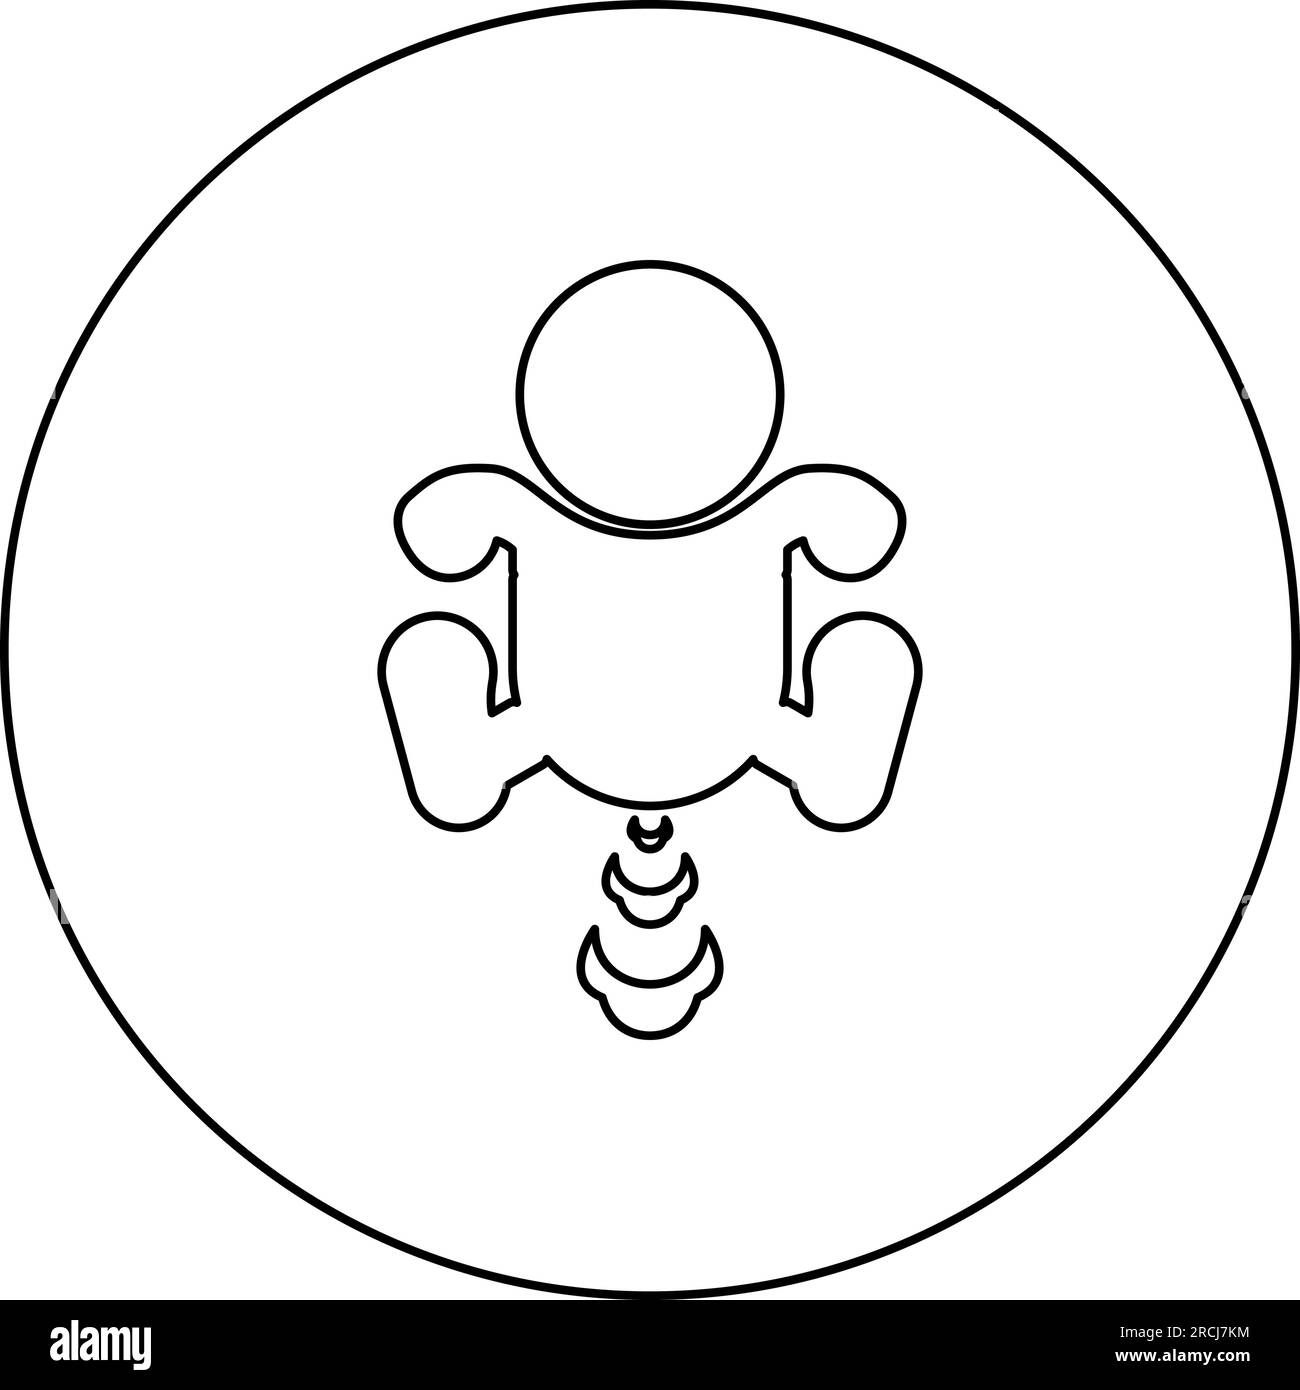 Kinderfurze Puffing Symbol im Kreis rund schwarz Vektor Abbildung Konturlinie dünner Stil einfach Stock Vektor